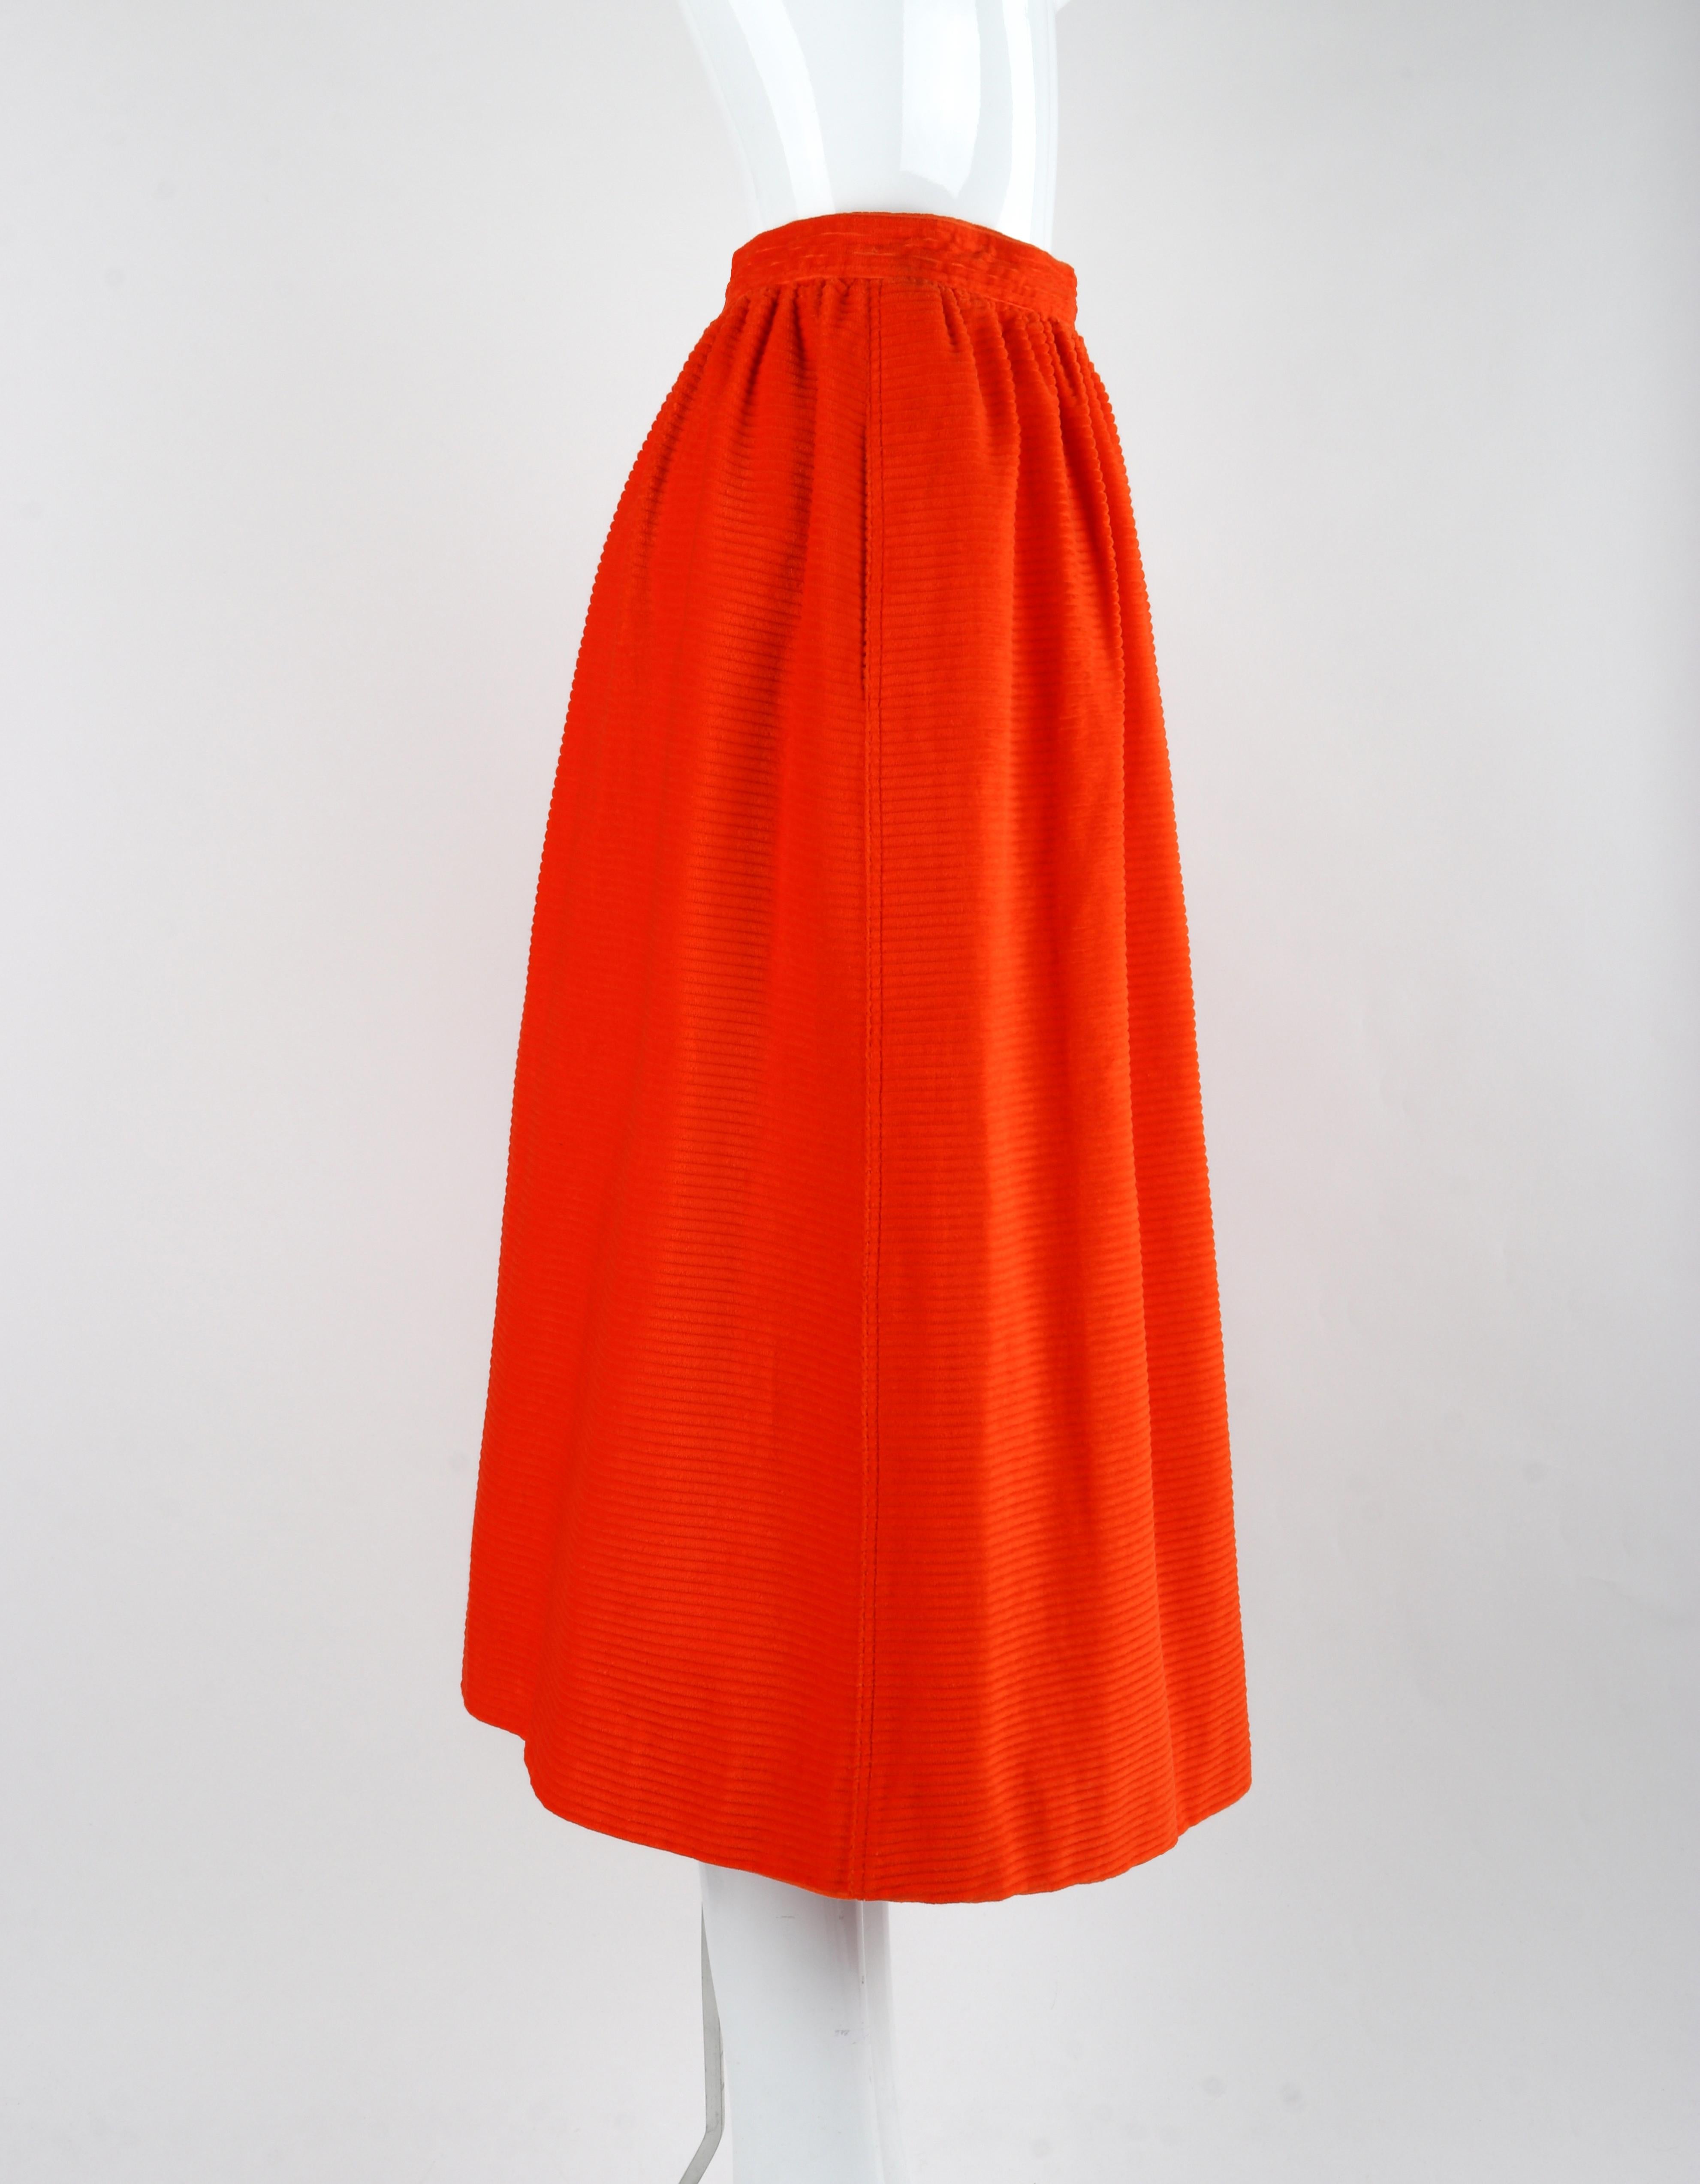 COURREGES c.1970's Orange Corduroy Button Up Jacket Blazer Skirt Suit Set w/Tags For Sale 4